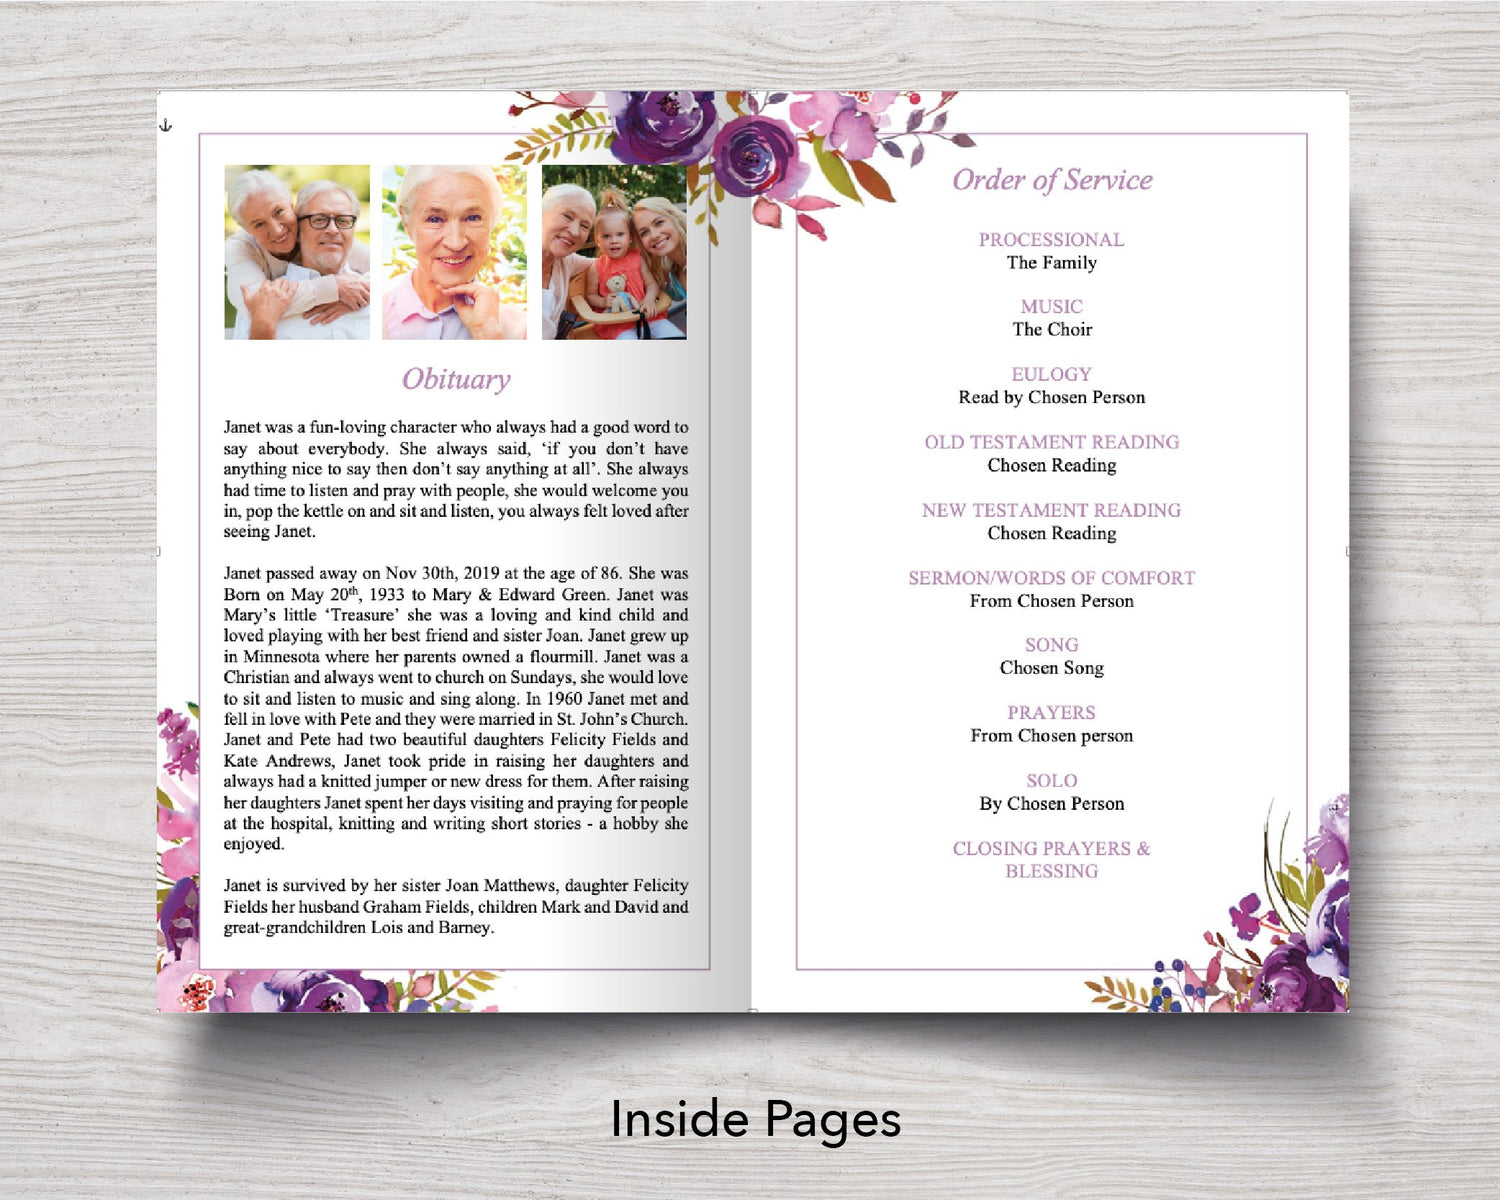 4 Page Peonies Bloom Funeral Program Template